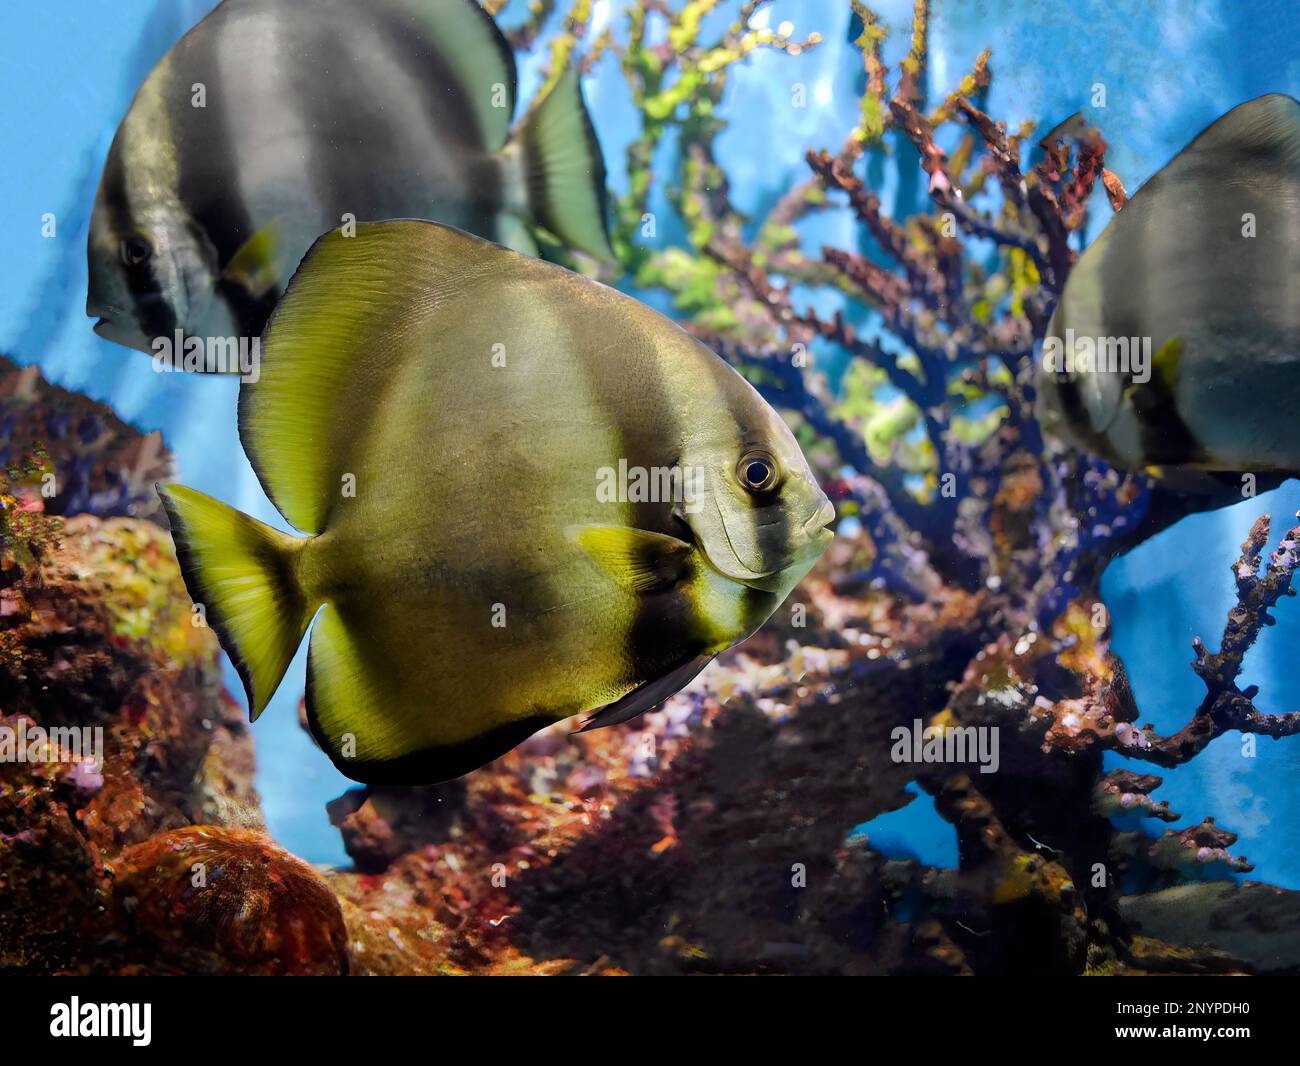 Primo piano di pesce gatto Longfin, pesce gatto teira, teira platax, nuoto sott'acqua in una vasca di pesci, acquario di Phuket, sfondo sfocato delle barriere coralline Foto Stock